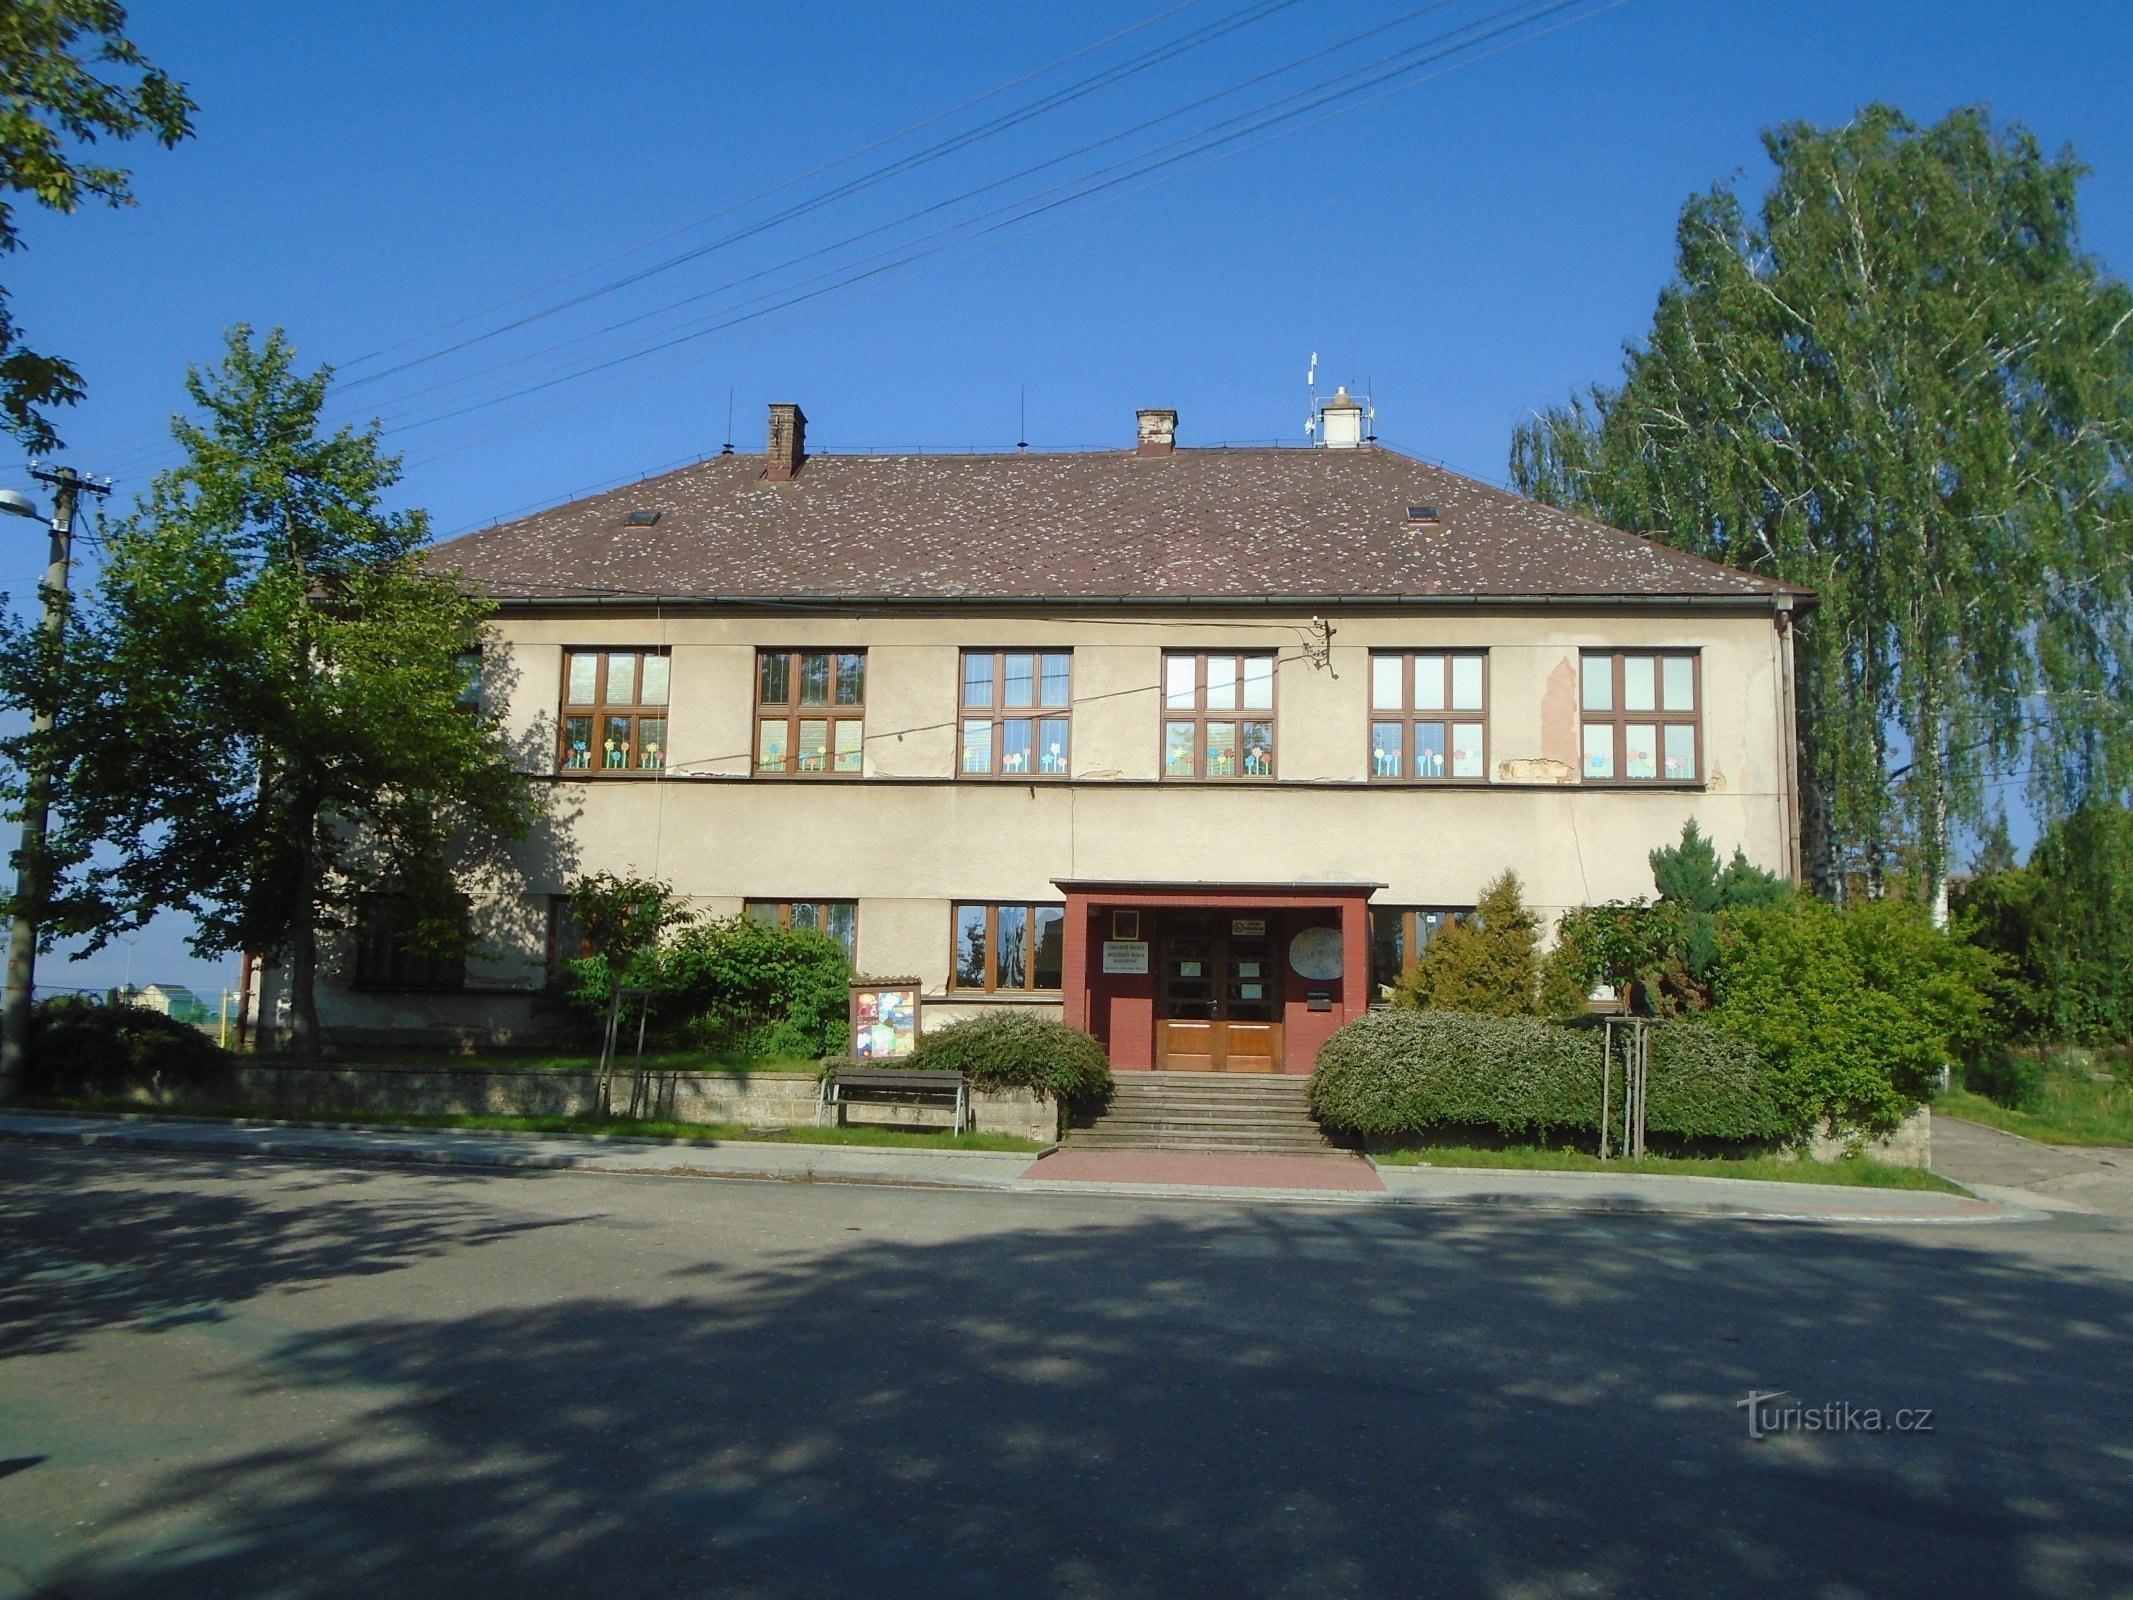 Skola (Boharyné)